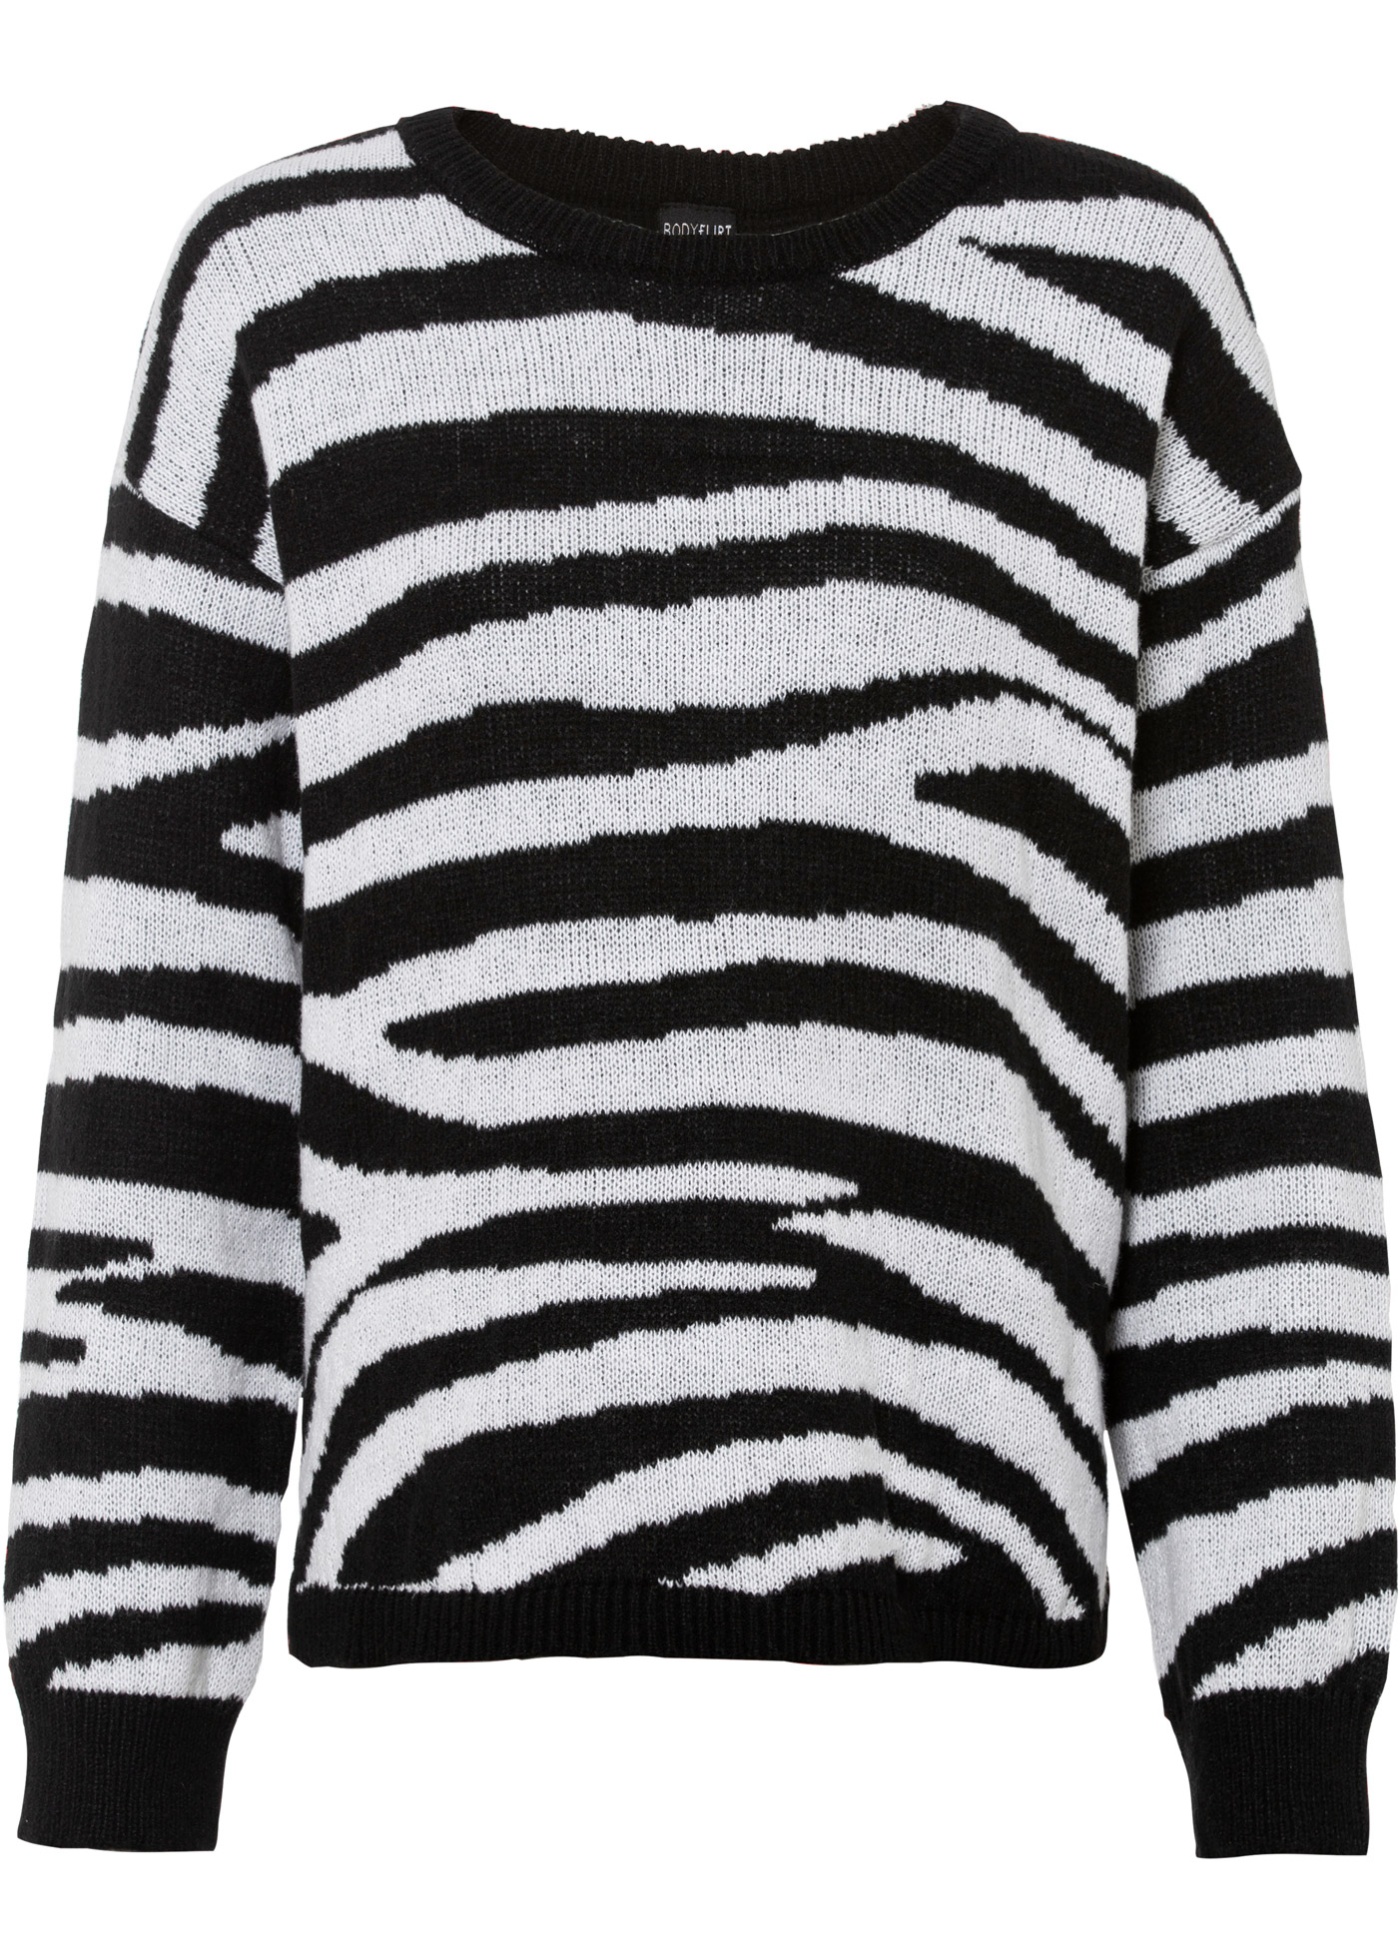 Toller Pullover mit seitlichen Schlitzen am Saum. (96420181) in schwarz/weiß